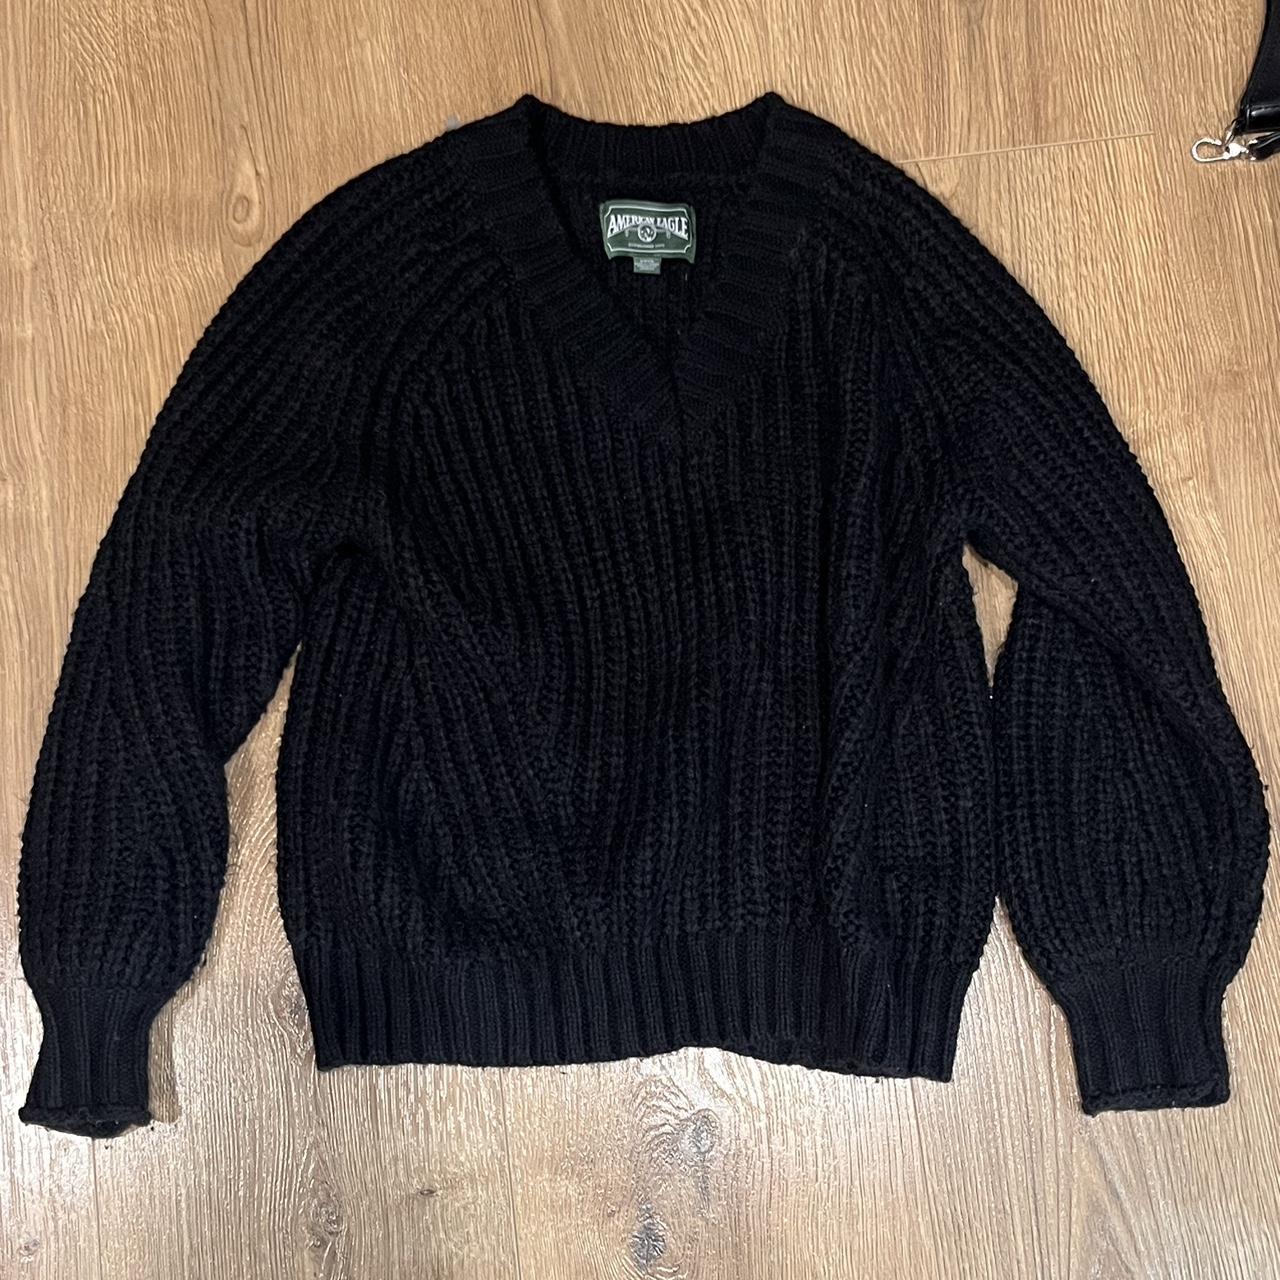 Black American Eagle knit sweater - Depop